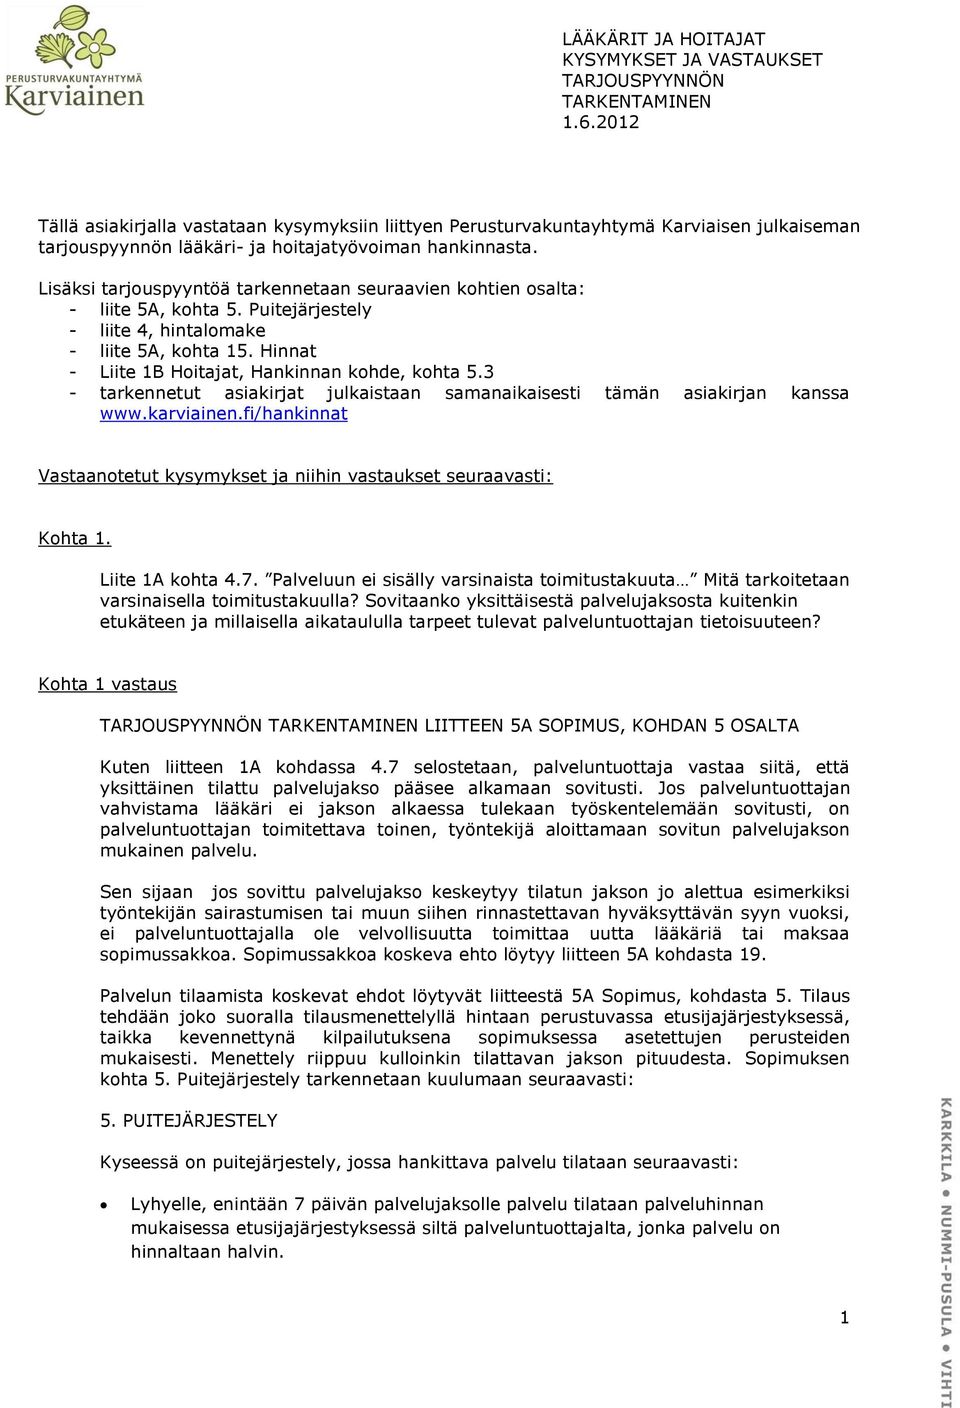 3 - tarkennetut asiakirjat julkaistaan samanaikaisesti tämän asiakirjan kanssa www.karviainen.fi/hankinnat Vastaanotetut kysymykset ja niihin vastaukset seuraavasti: Kohta 1. Liite 1A kohta 4.7.